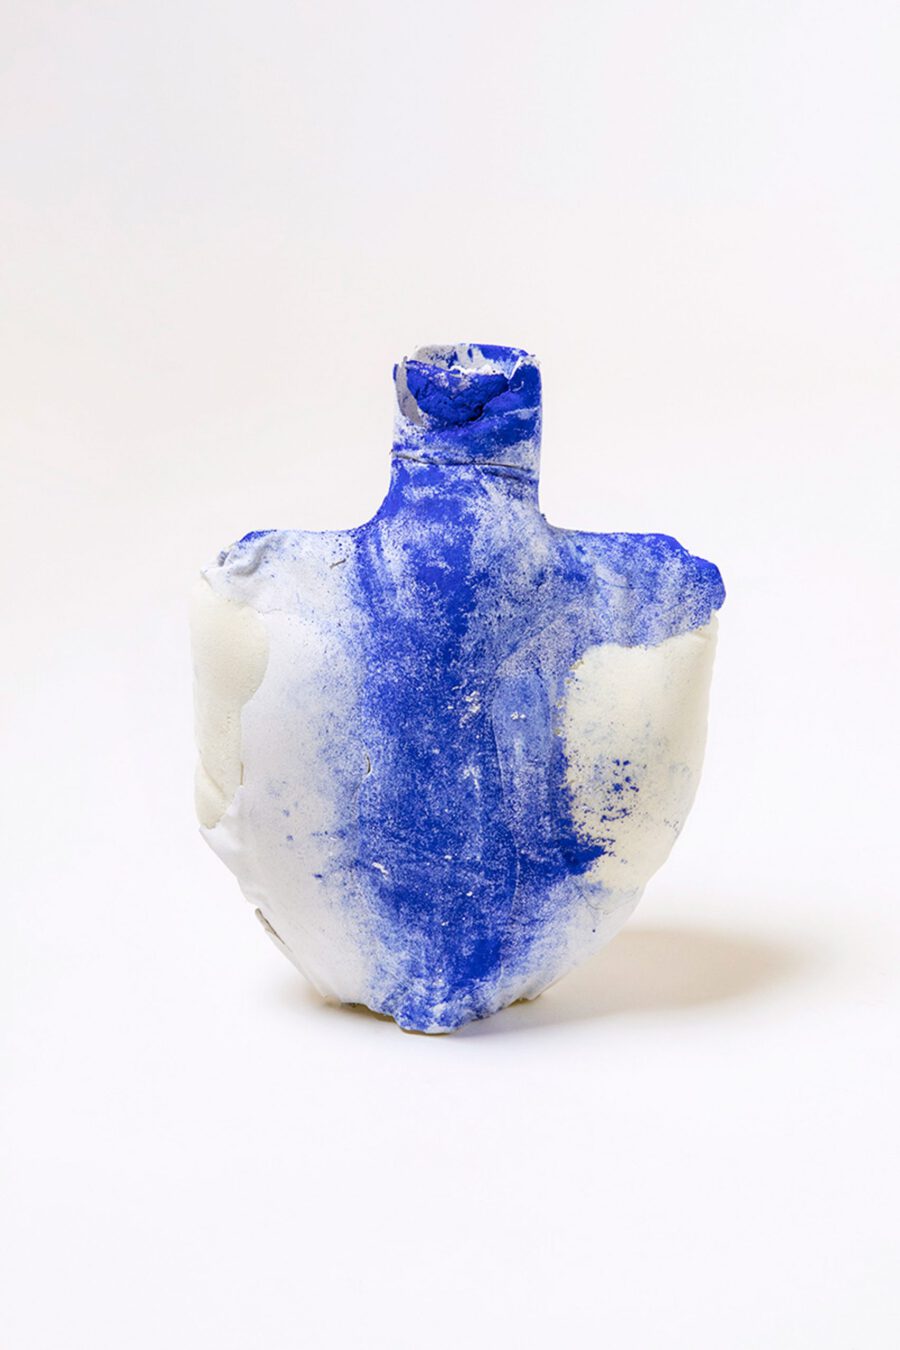 julia-olanders blue toxic vase article on thursd